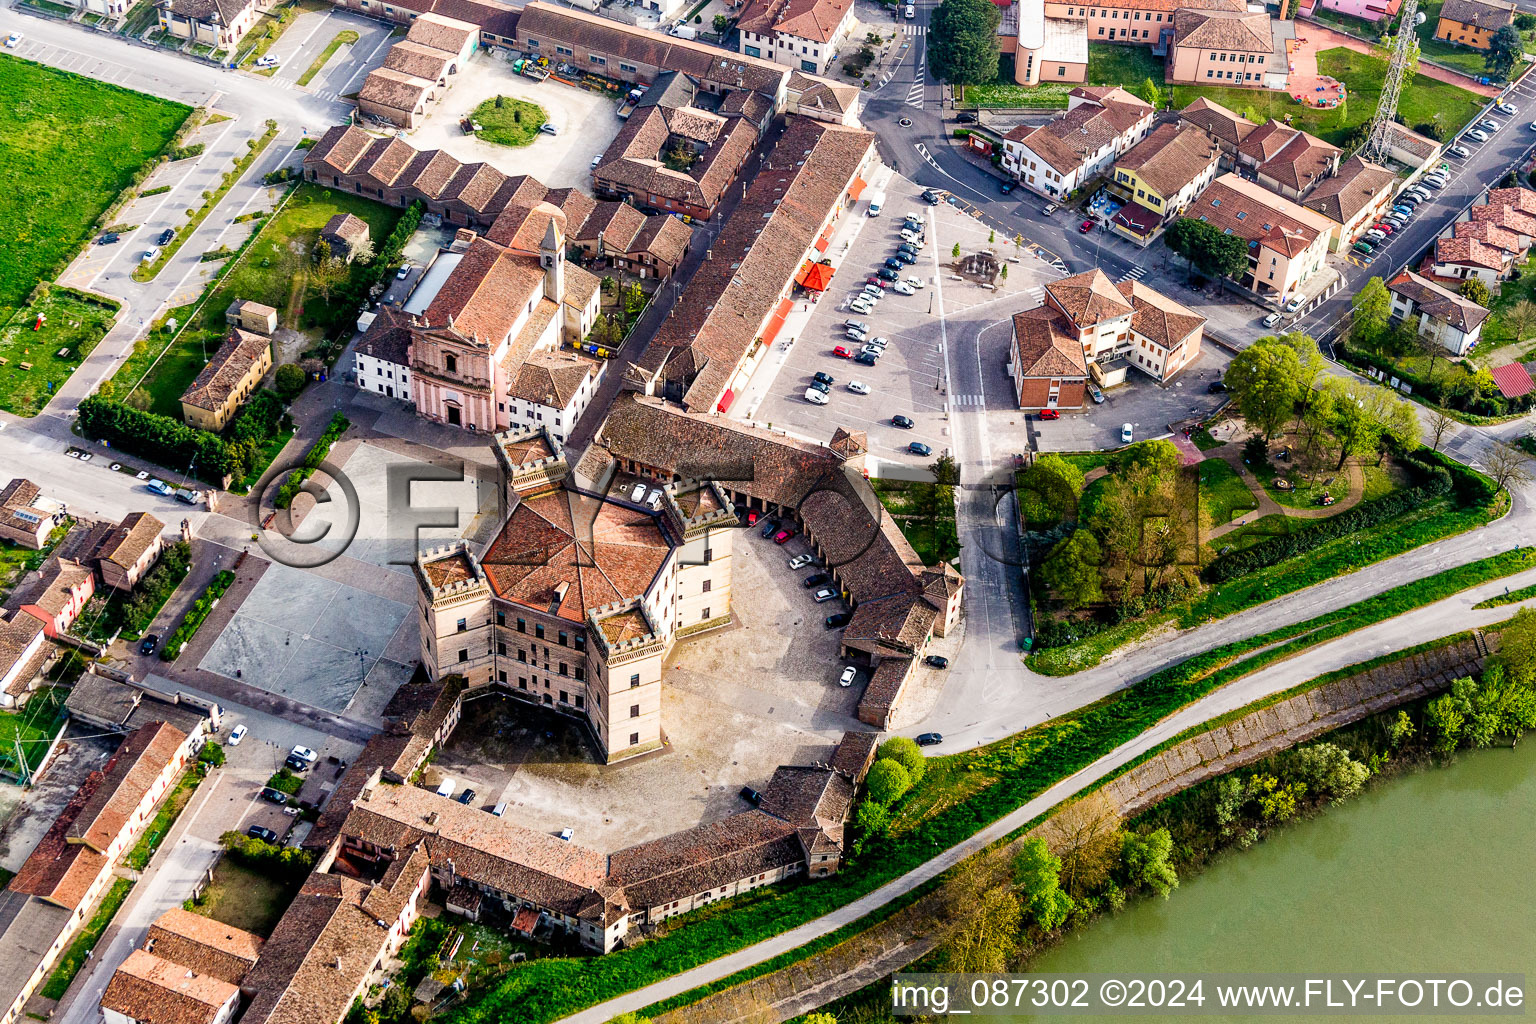 Aerial photograpy of Castle towers at Castle Castle of Robinie Castello di Mesola - Delizia Estense at the Po river in Mesola in Emilia-Romagna, Italy